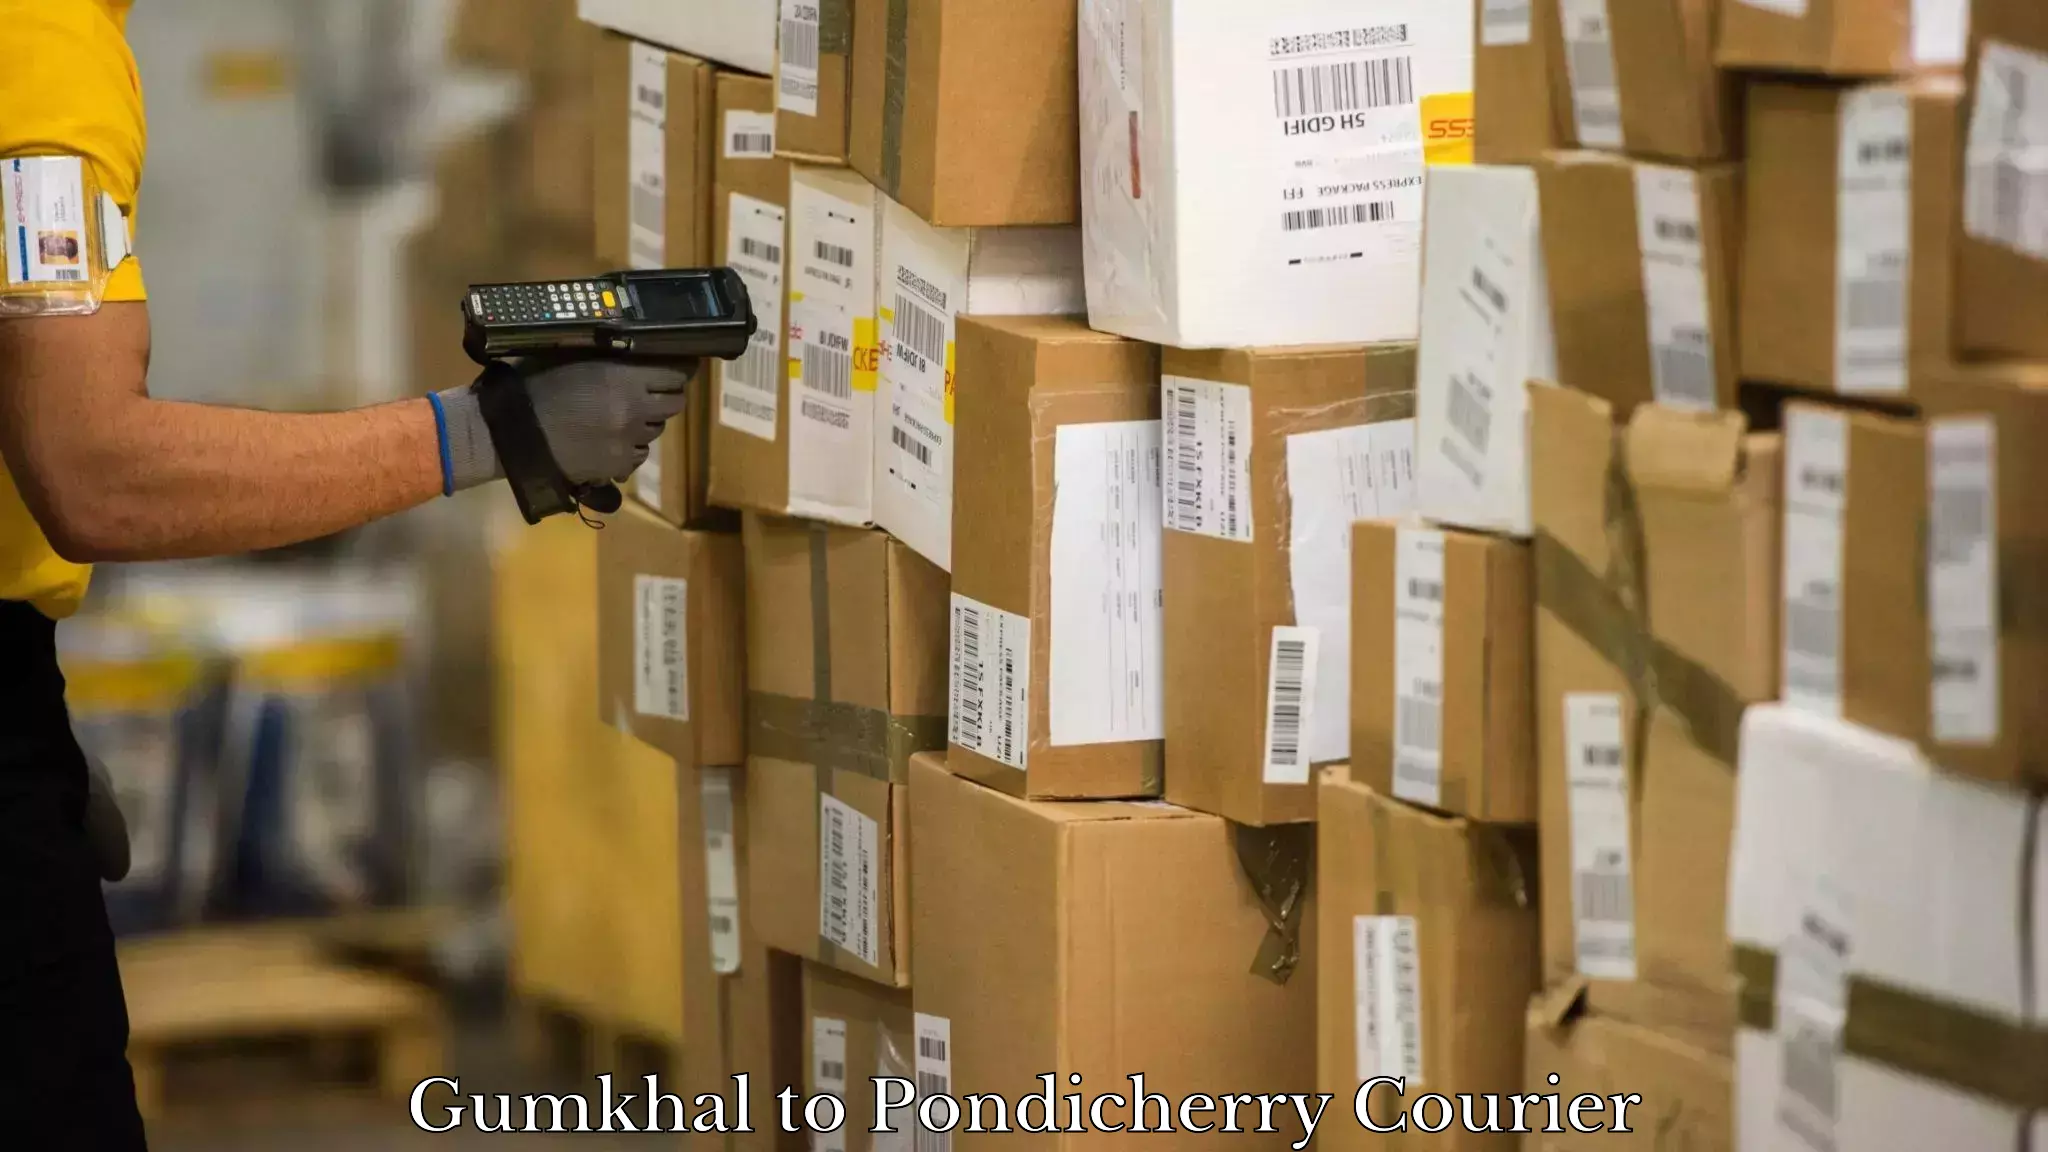 Modern parcel services Gumkhal to Pondicherry